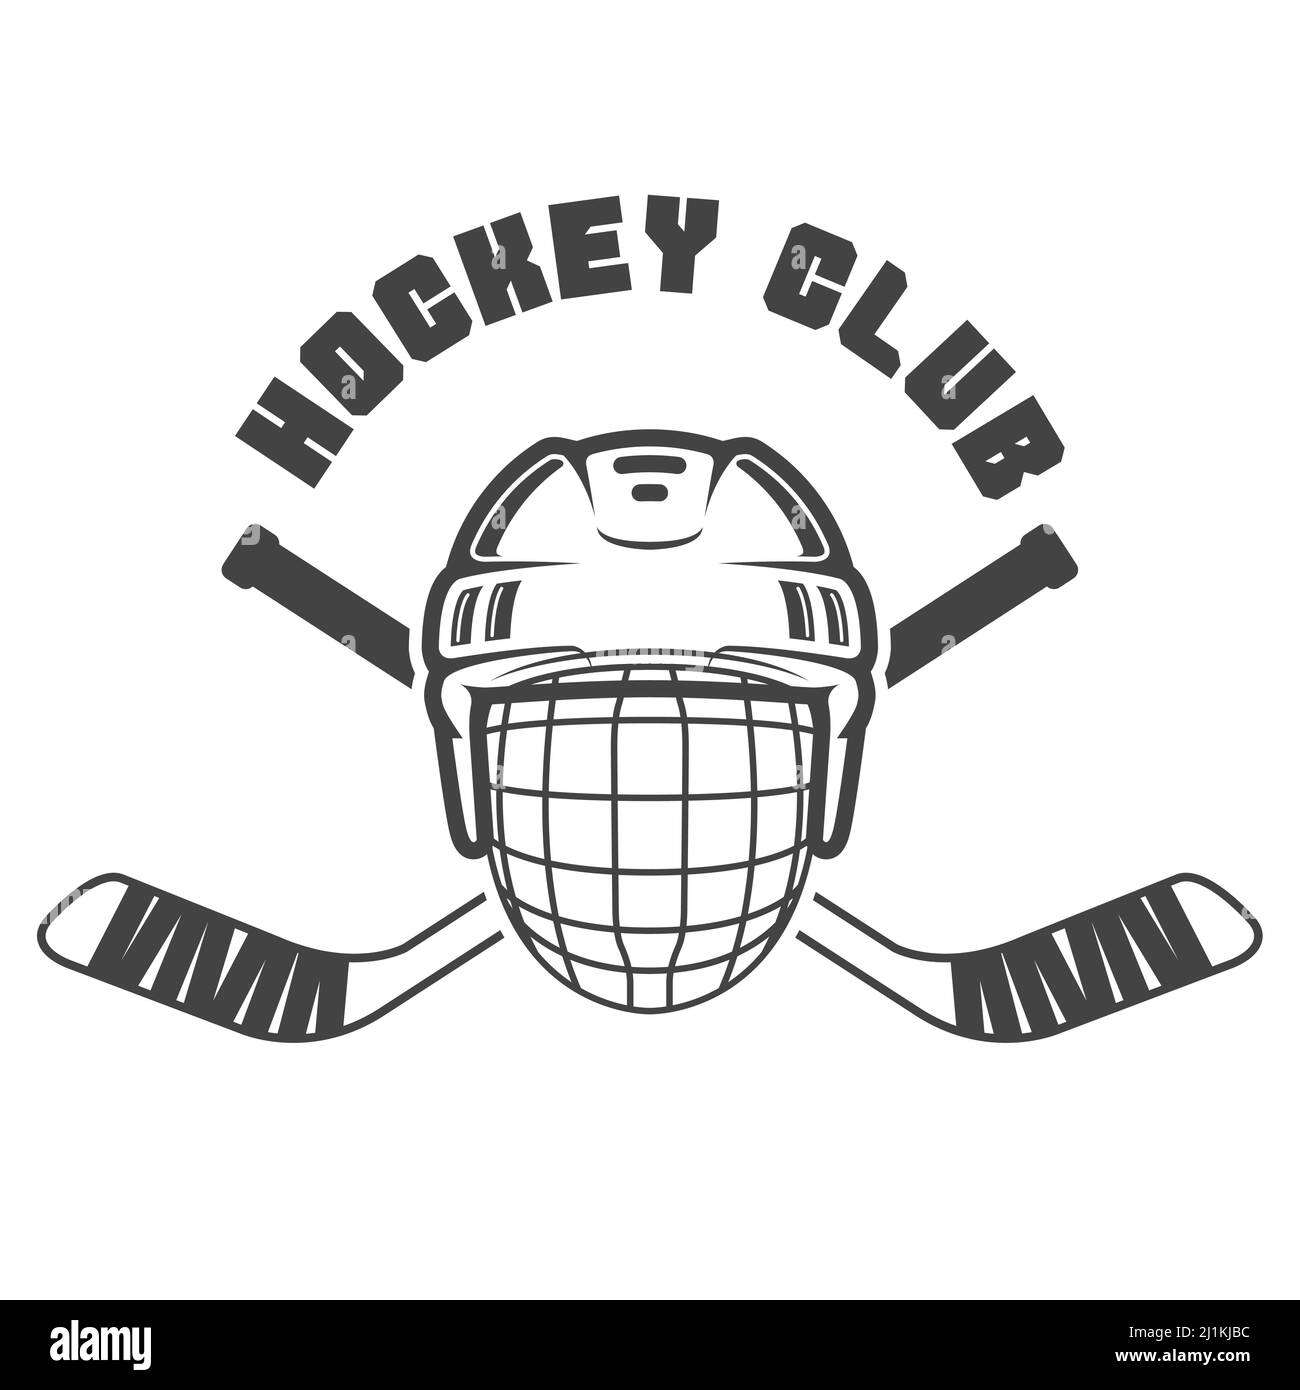 Eishockey-Emblem mit Helm und zwei gekreuzten Hockeystäben, Vektor Stock Vektor